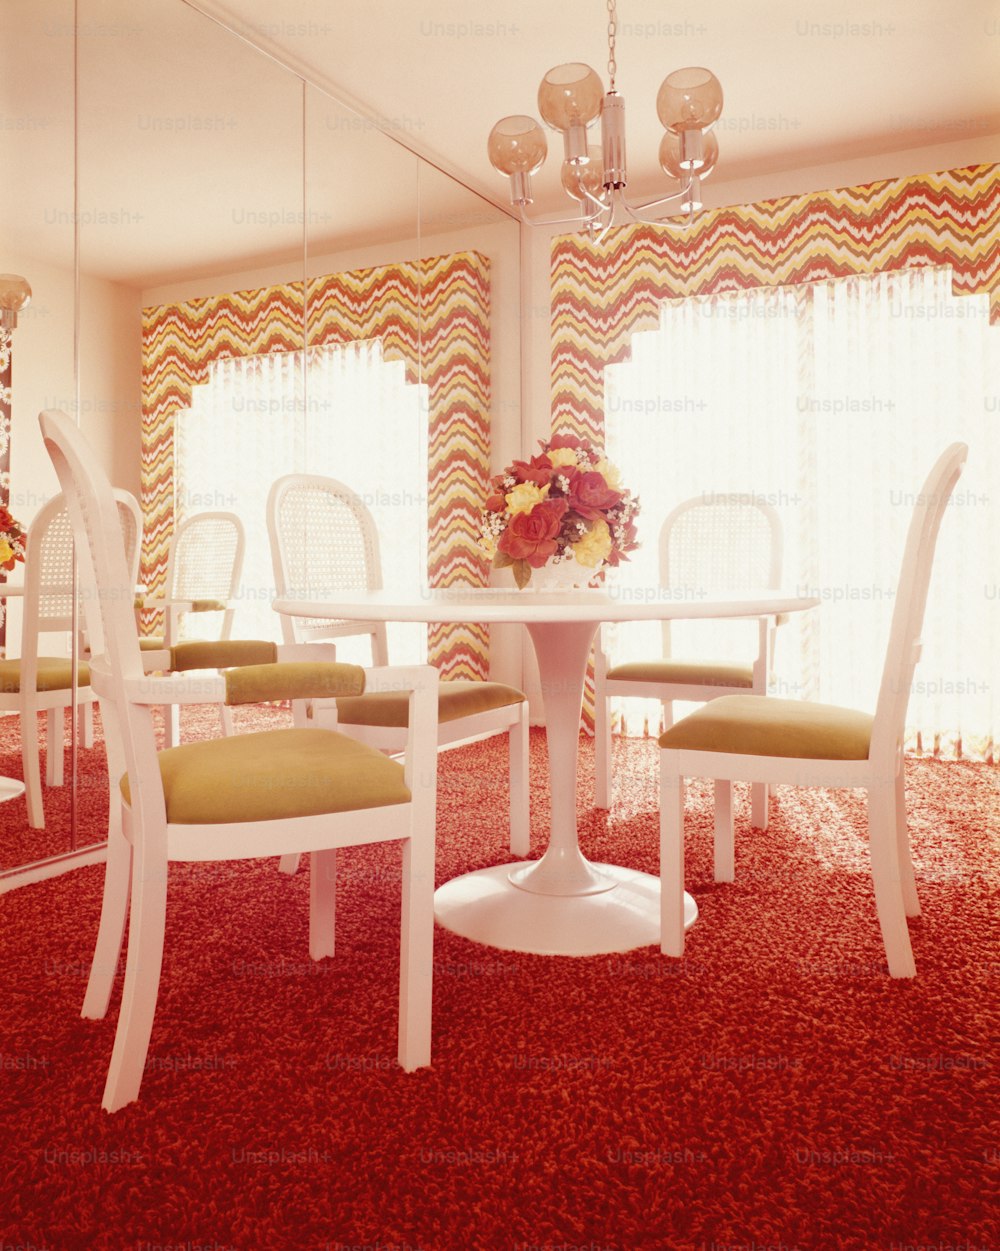 ÉTATS-UNIS - Vers les années 1970 : Intérieur de la salle à manger, avec table blanche et quatre guéridons en plastique moulé.